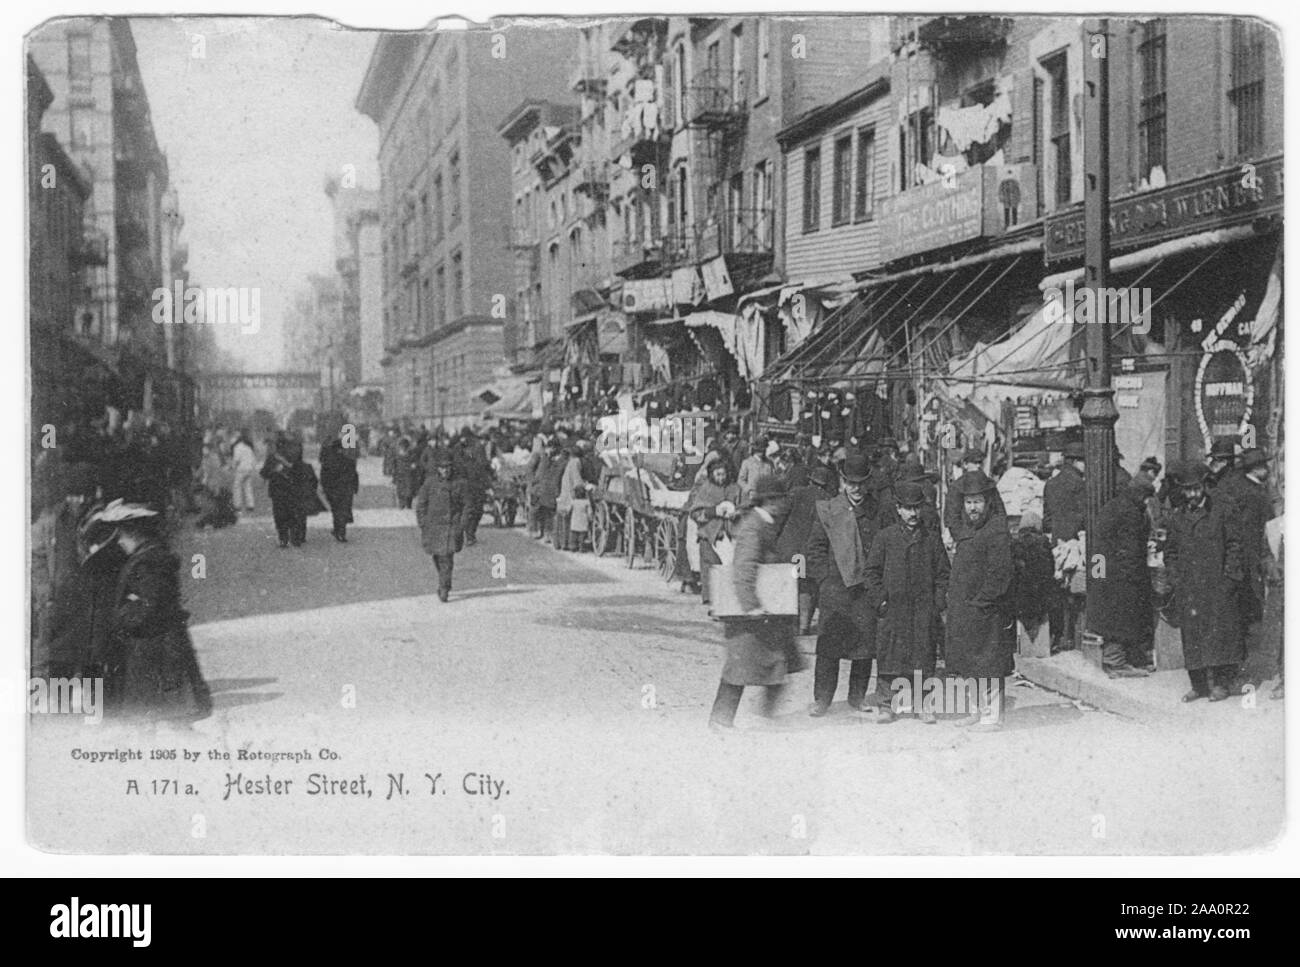 Cartolina inciso di persone e di venditori ambulanti in un affollato Hester Street, New York City, creato e pubblicato da Rotograph Co, 1905. Dalla Biblioteca Pubblica di New York. () Foto Stock